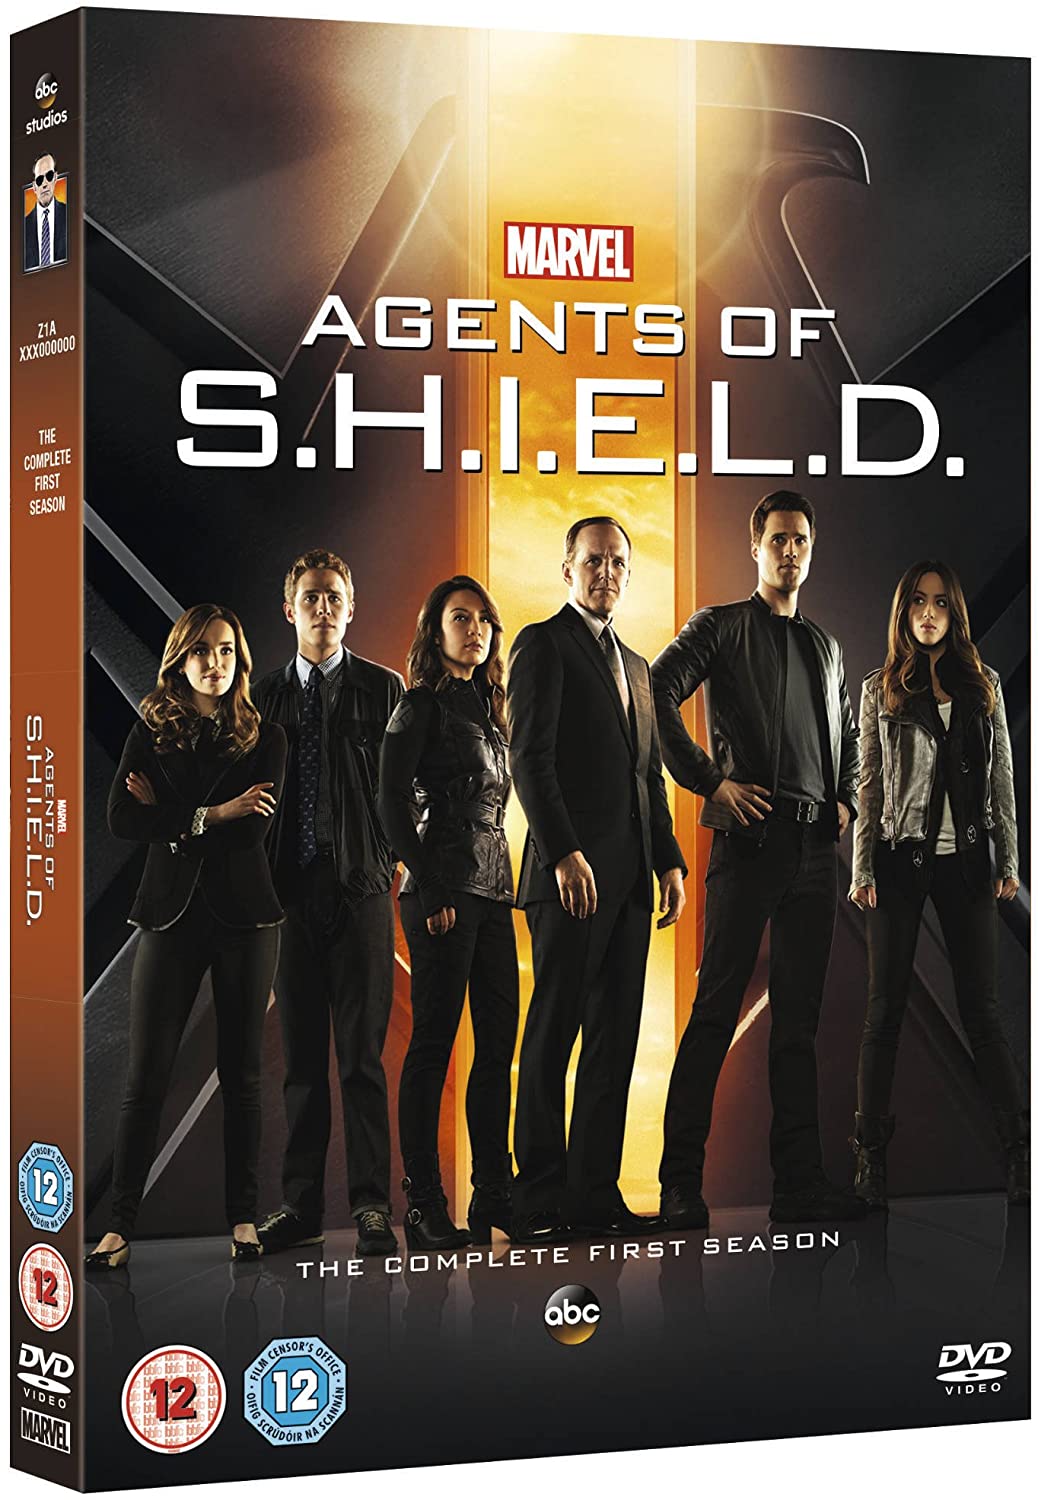 Les Agents du SHIELD de Marvel - Saison 1 [DVD]